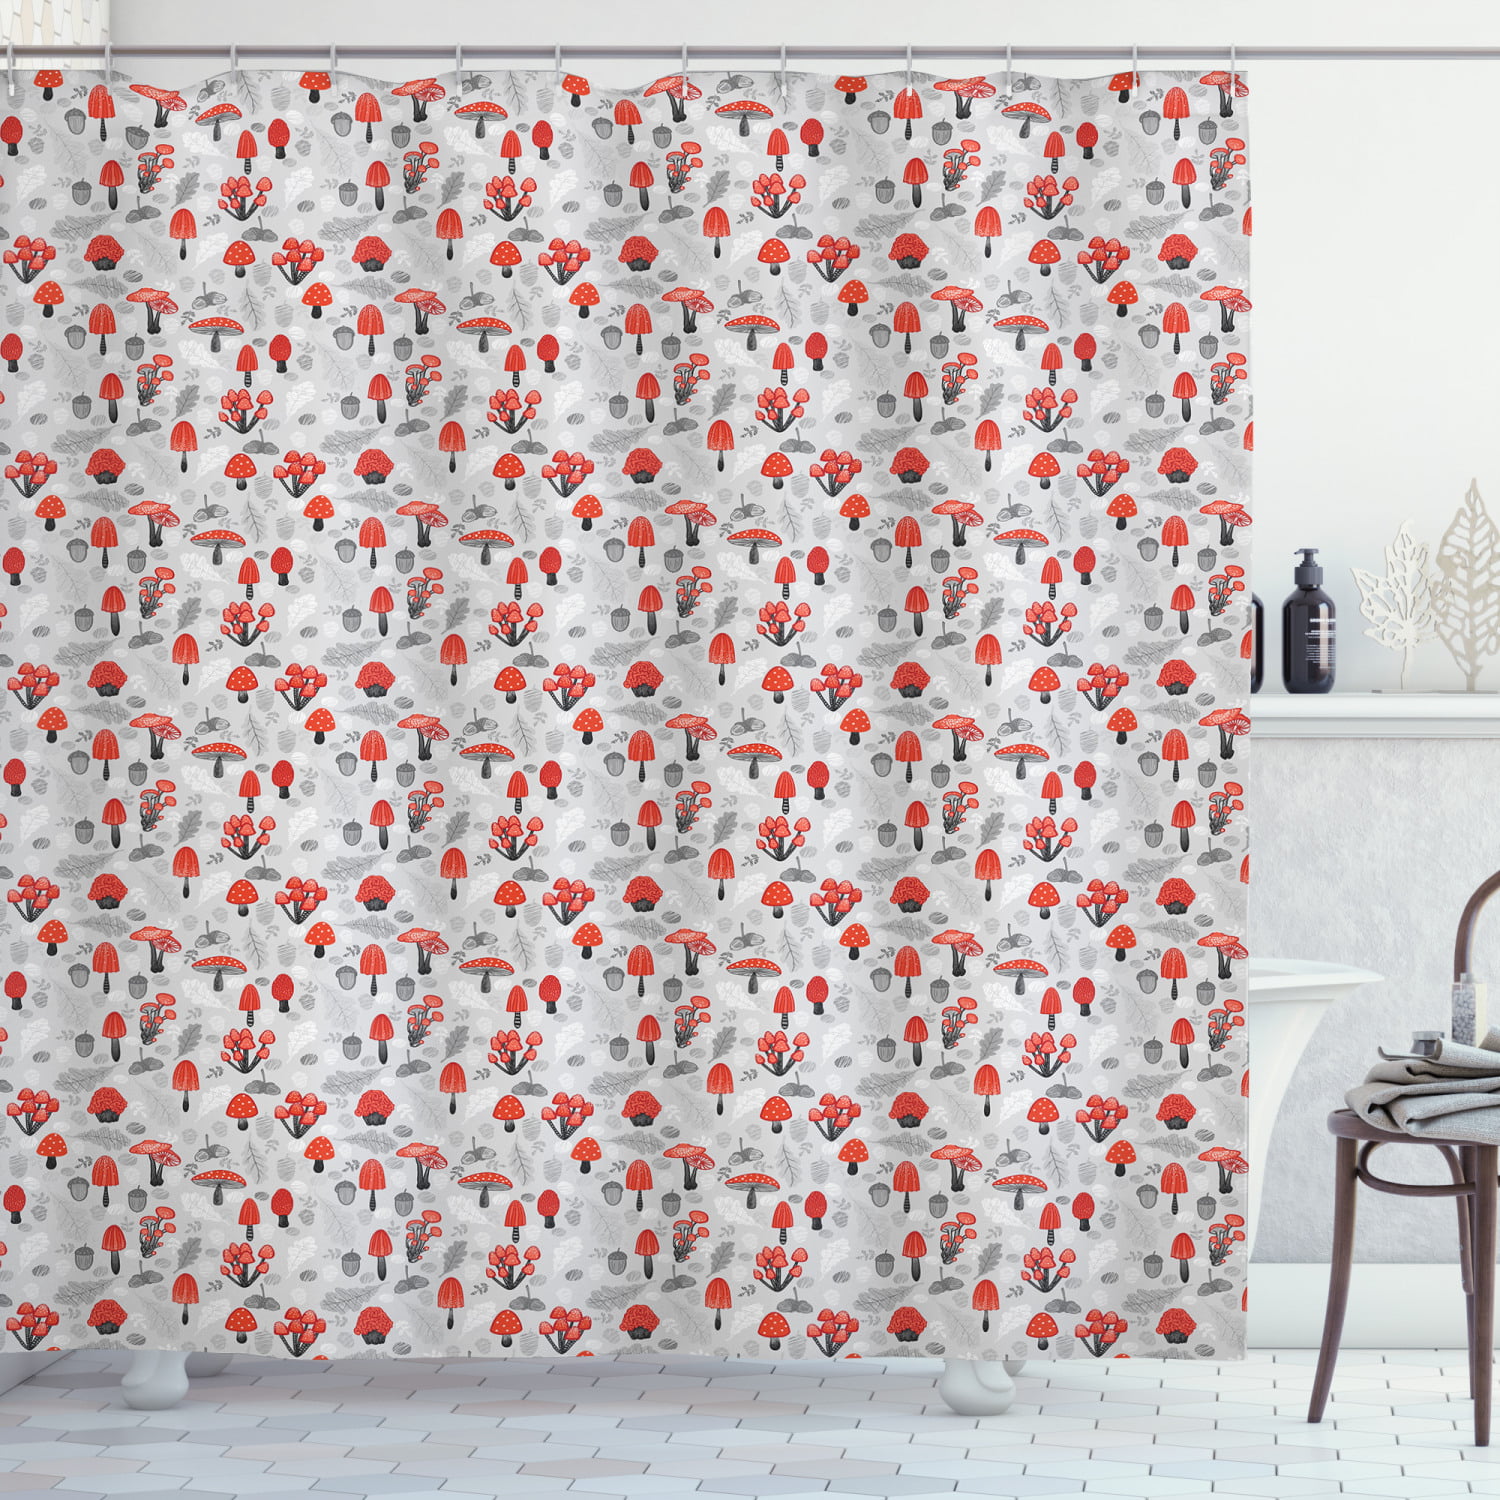 Woodland Mushroom Pattern Shower Curtain Fabric Decor Set with Hooks 4 Sizes 